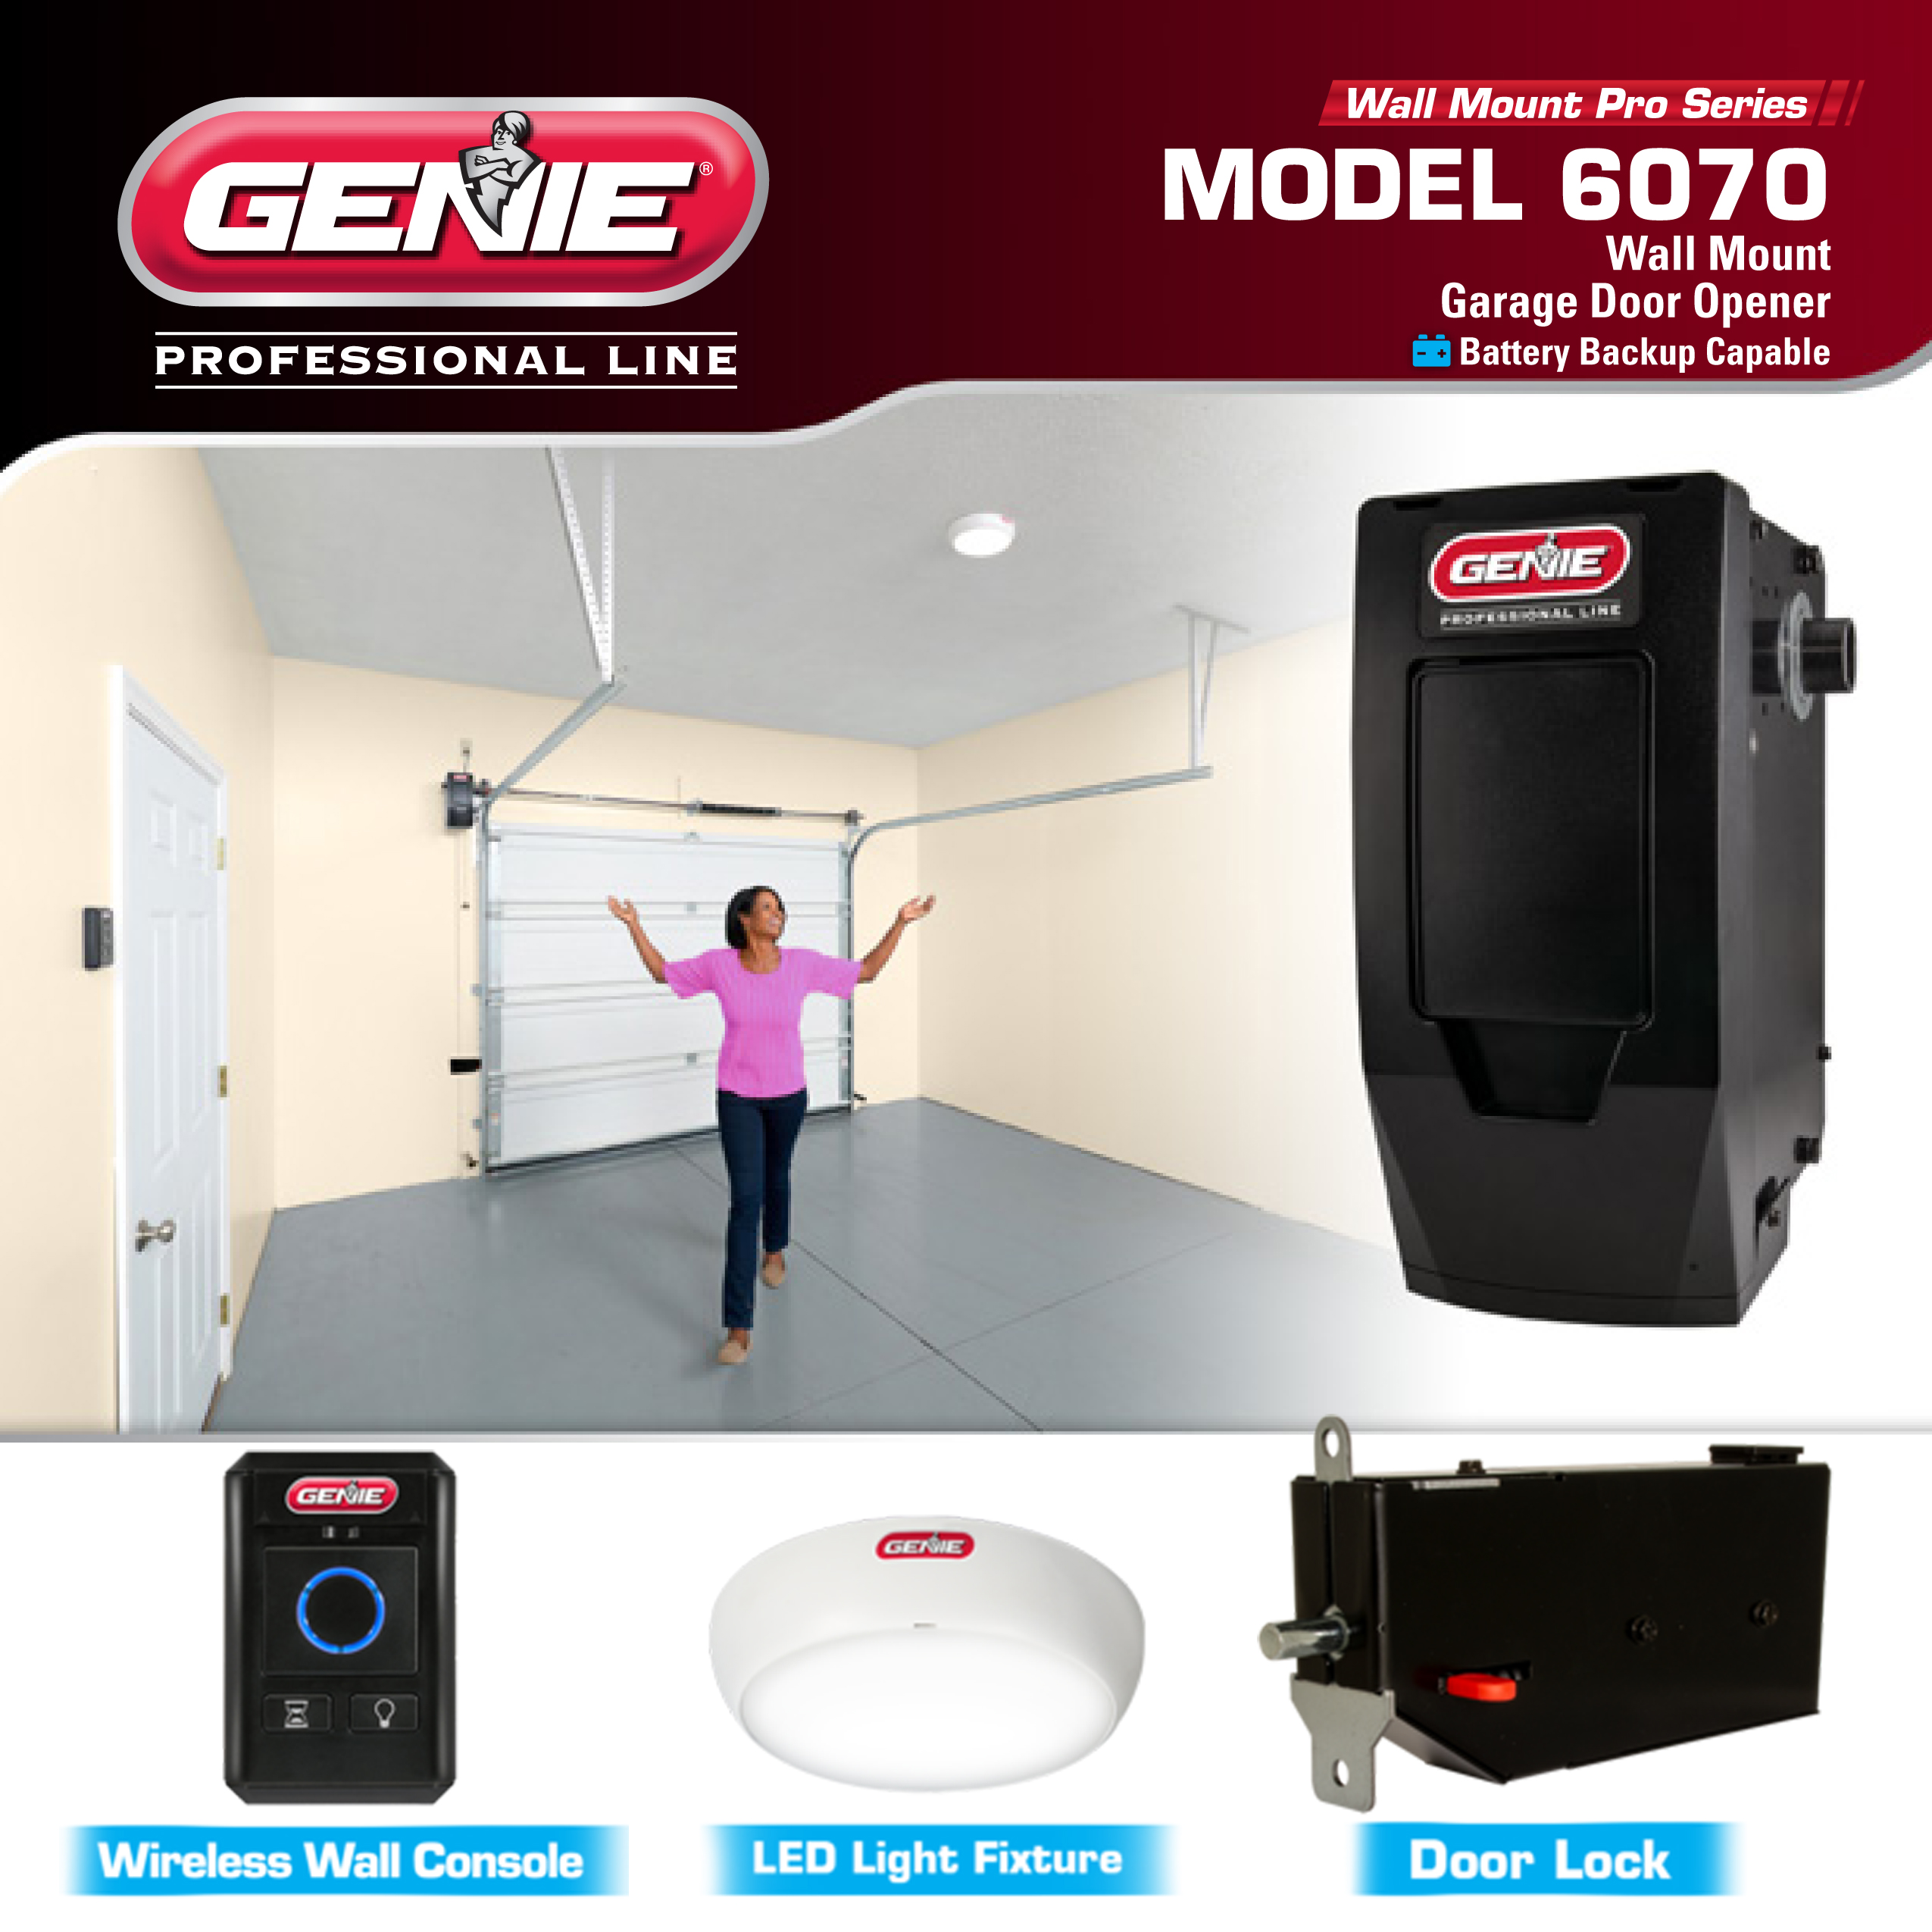 Genie Wall Mount Pro Series Garage Door Opener Model 6070 Garage Door Stuff